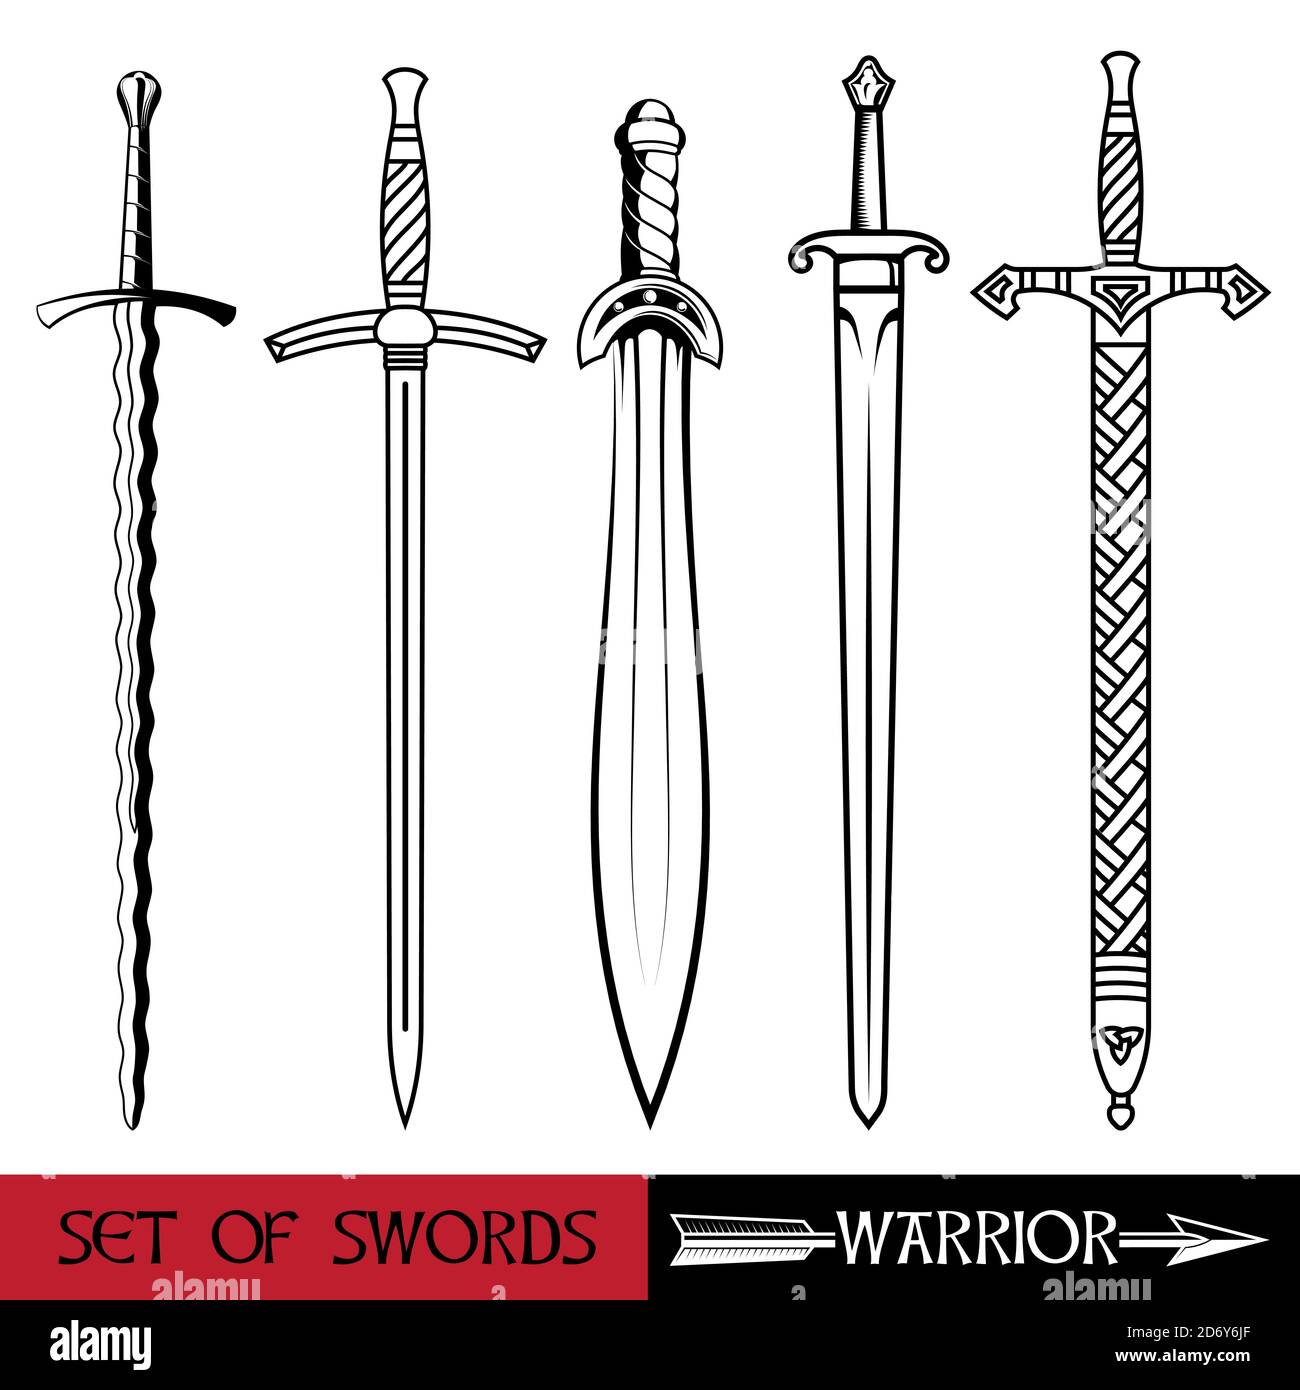 Arme de l'Europe antique - ensemble d'épées. Épée de Vikings, croiseurs de chevaliers d'épée, épée celtique Illustration de Vecteur